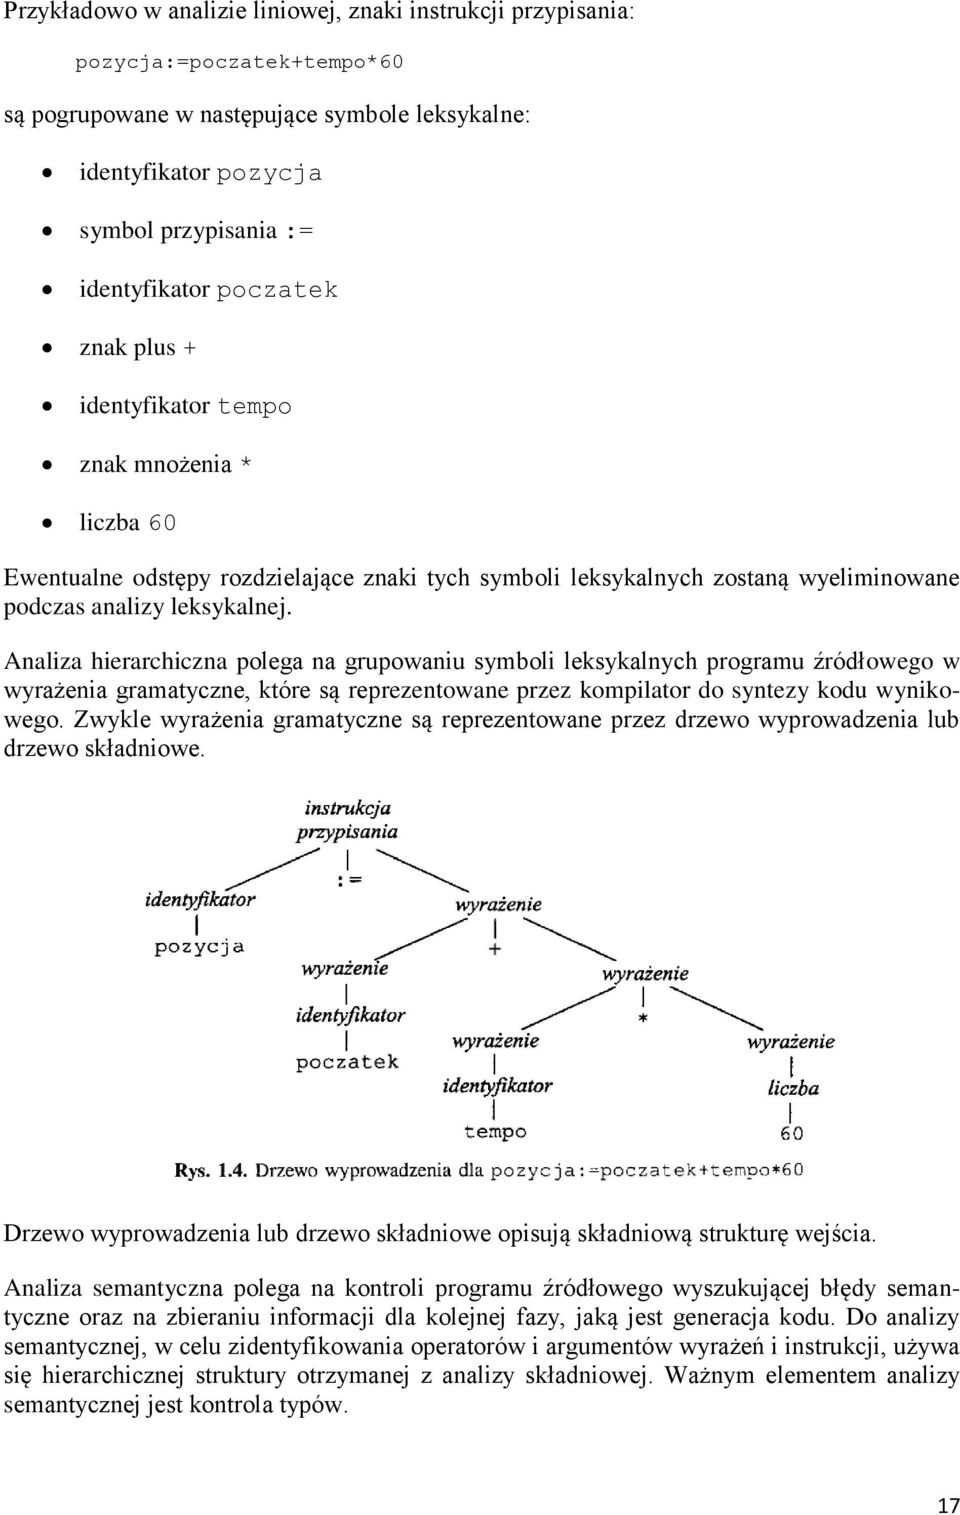 Analiza hierarchiczna polega na grupowaniu symboli leksykalnych programu źródłowego w wyrażenia gramatyczne, które są reprezentowane przez kompilator do syntezy kodu wynikowego.